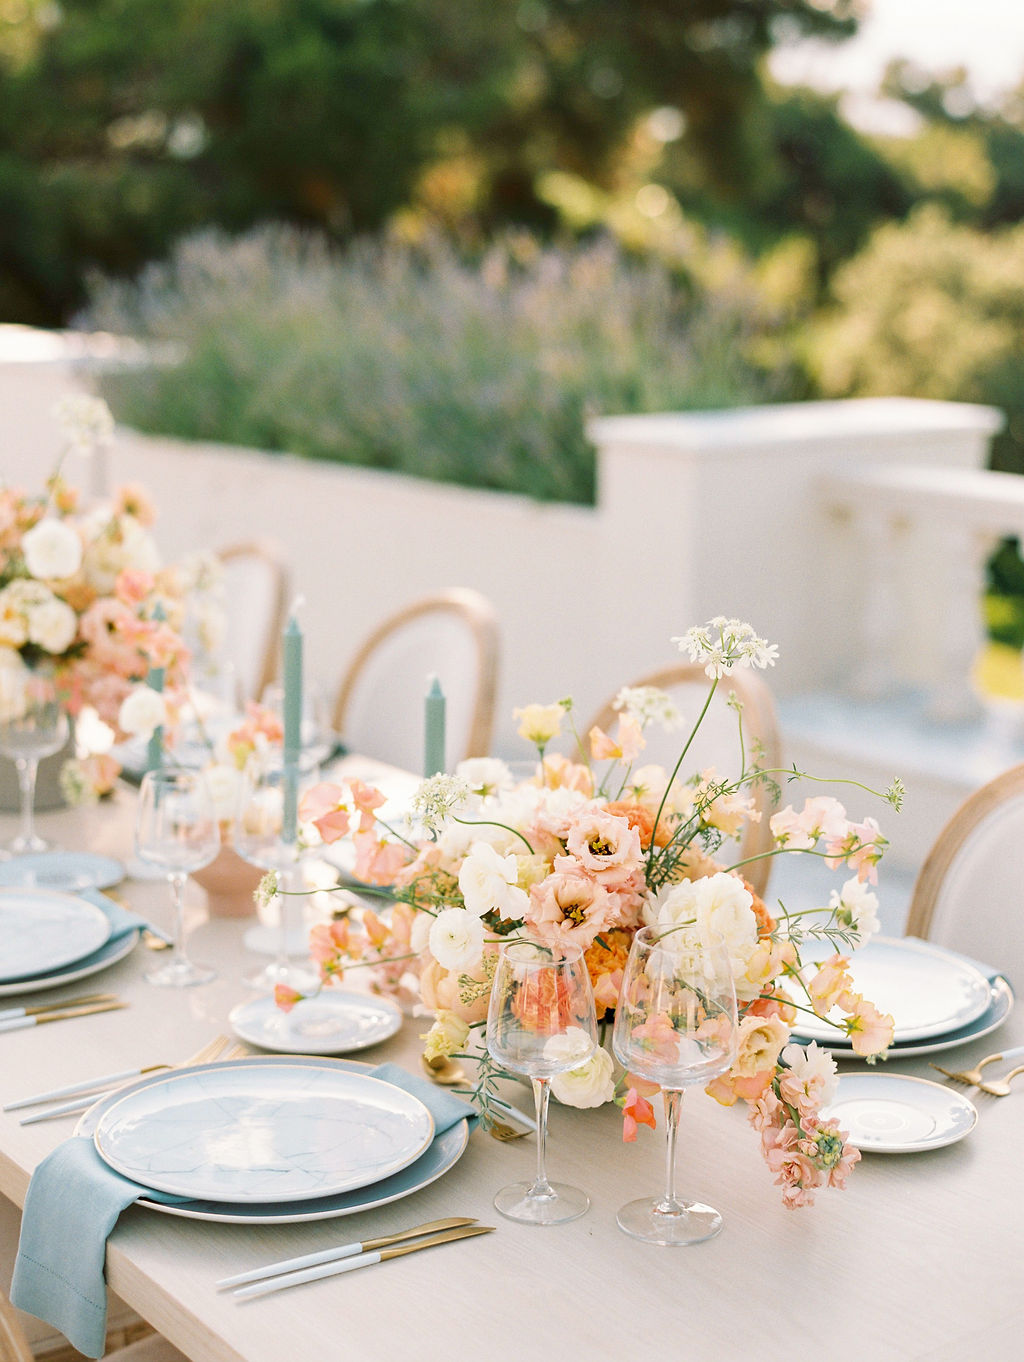 Wedding In Greece - Table setting